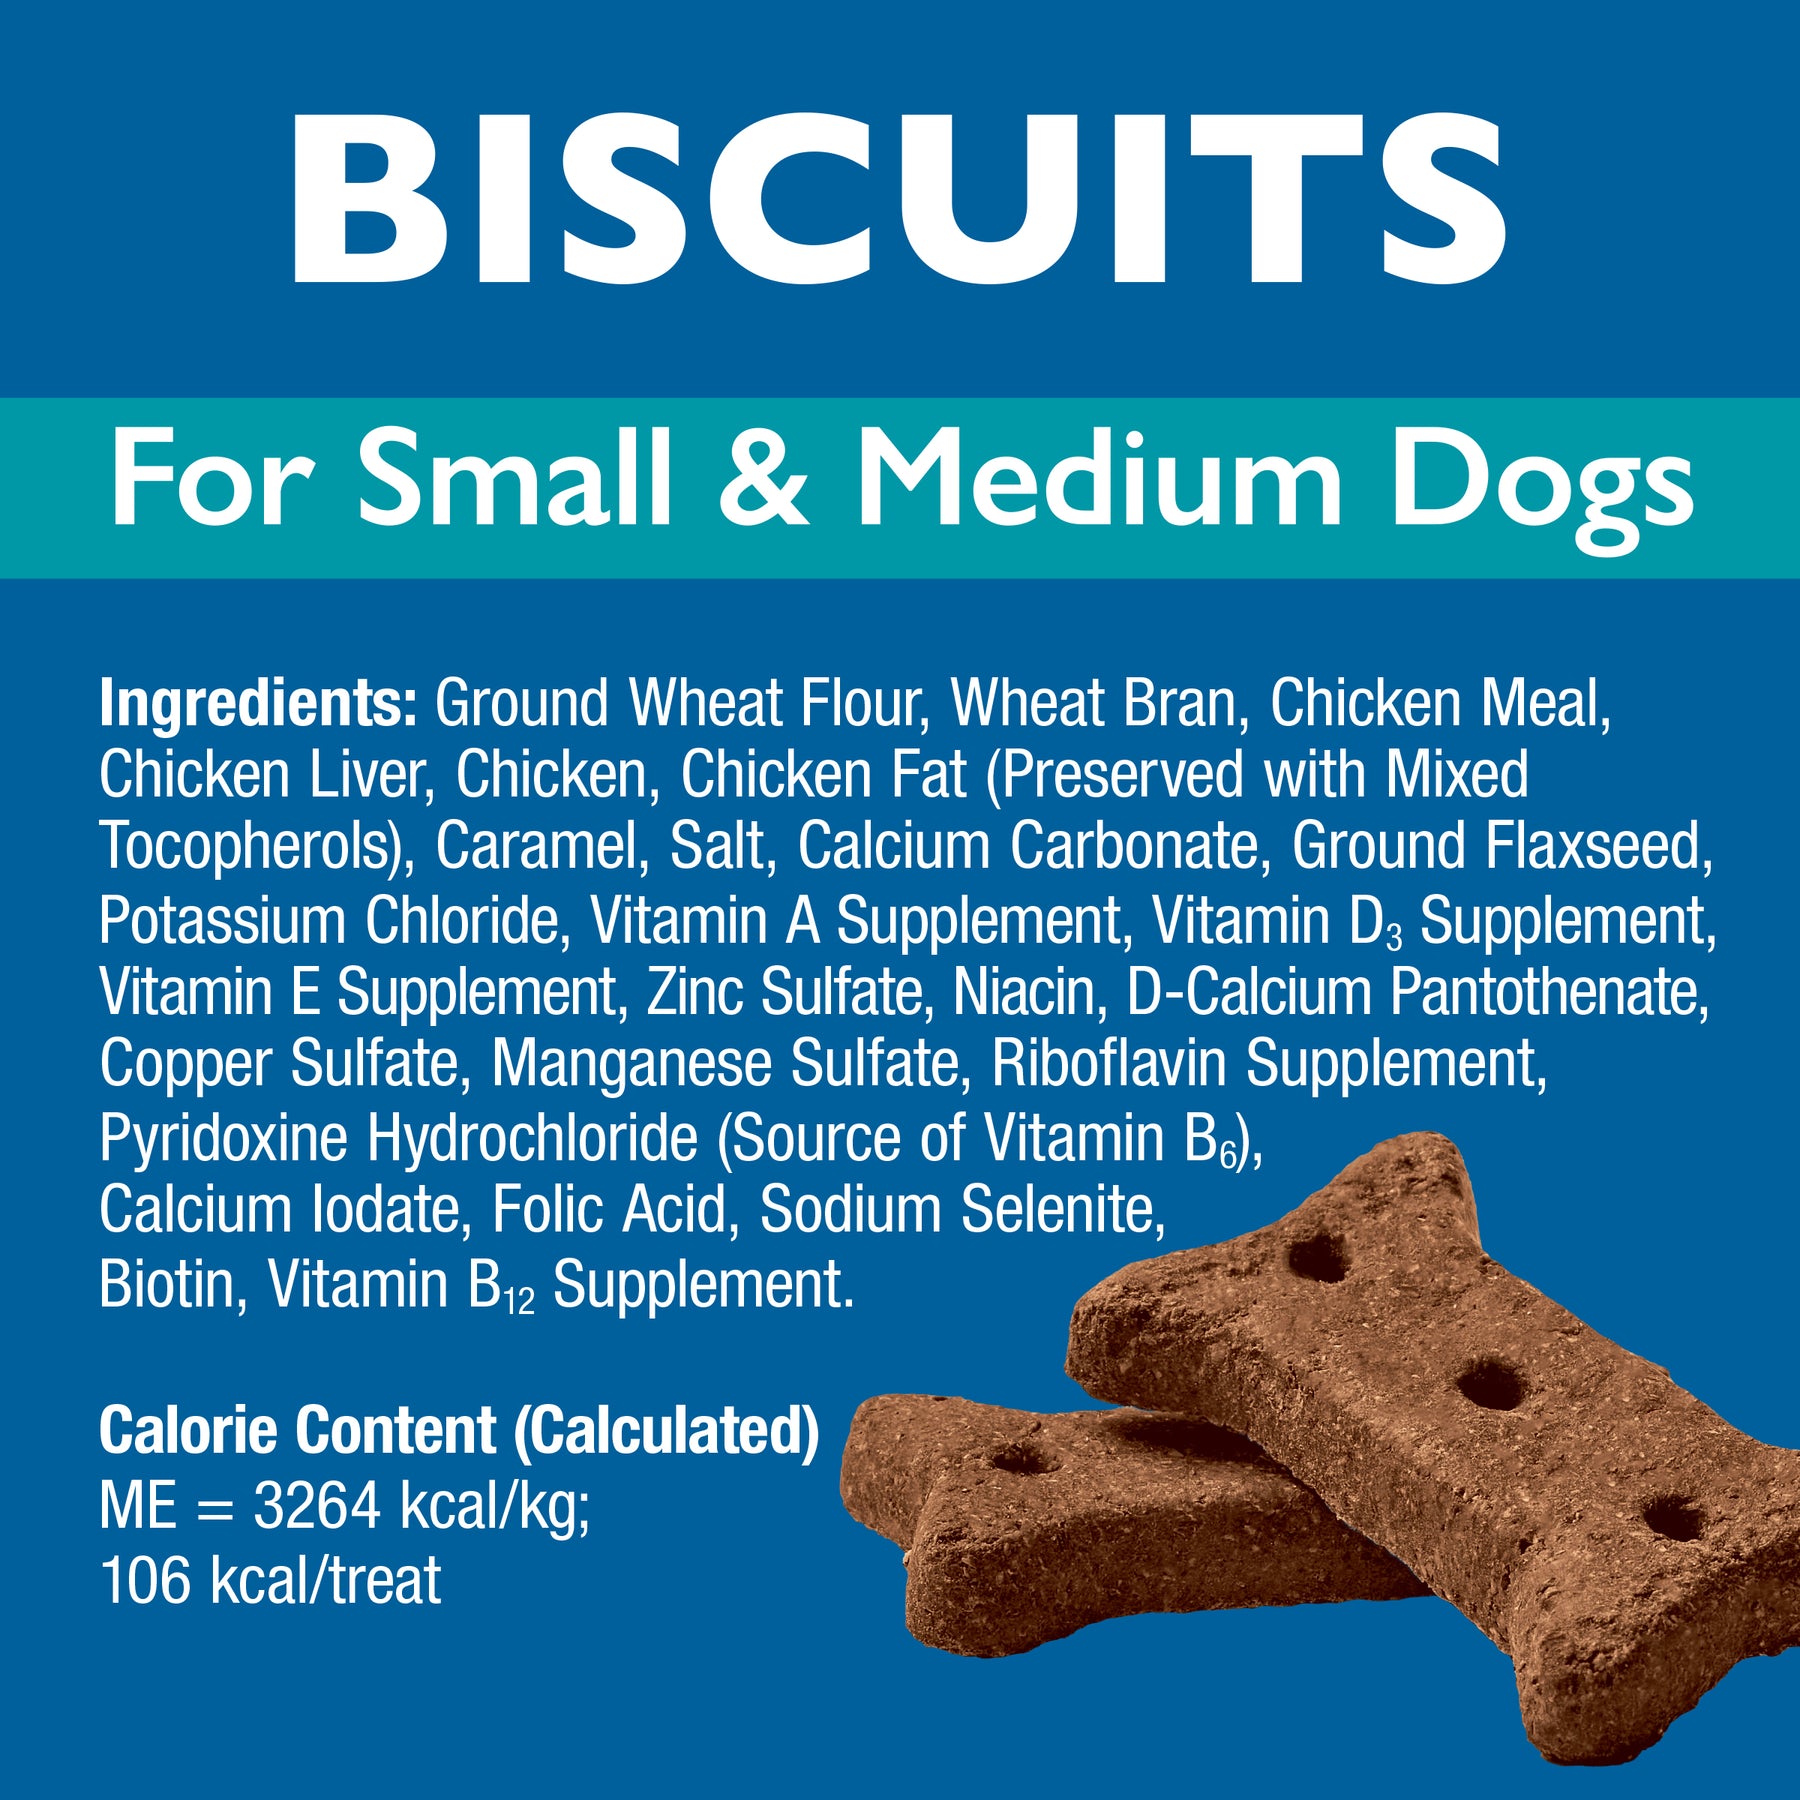 Bil-Jac - Medium Biscuits Dog Treats